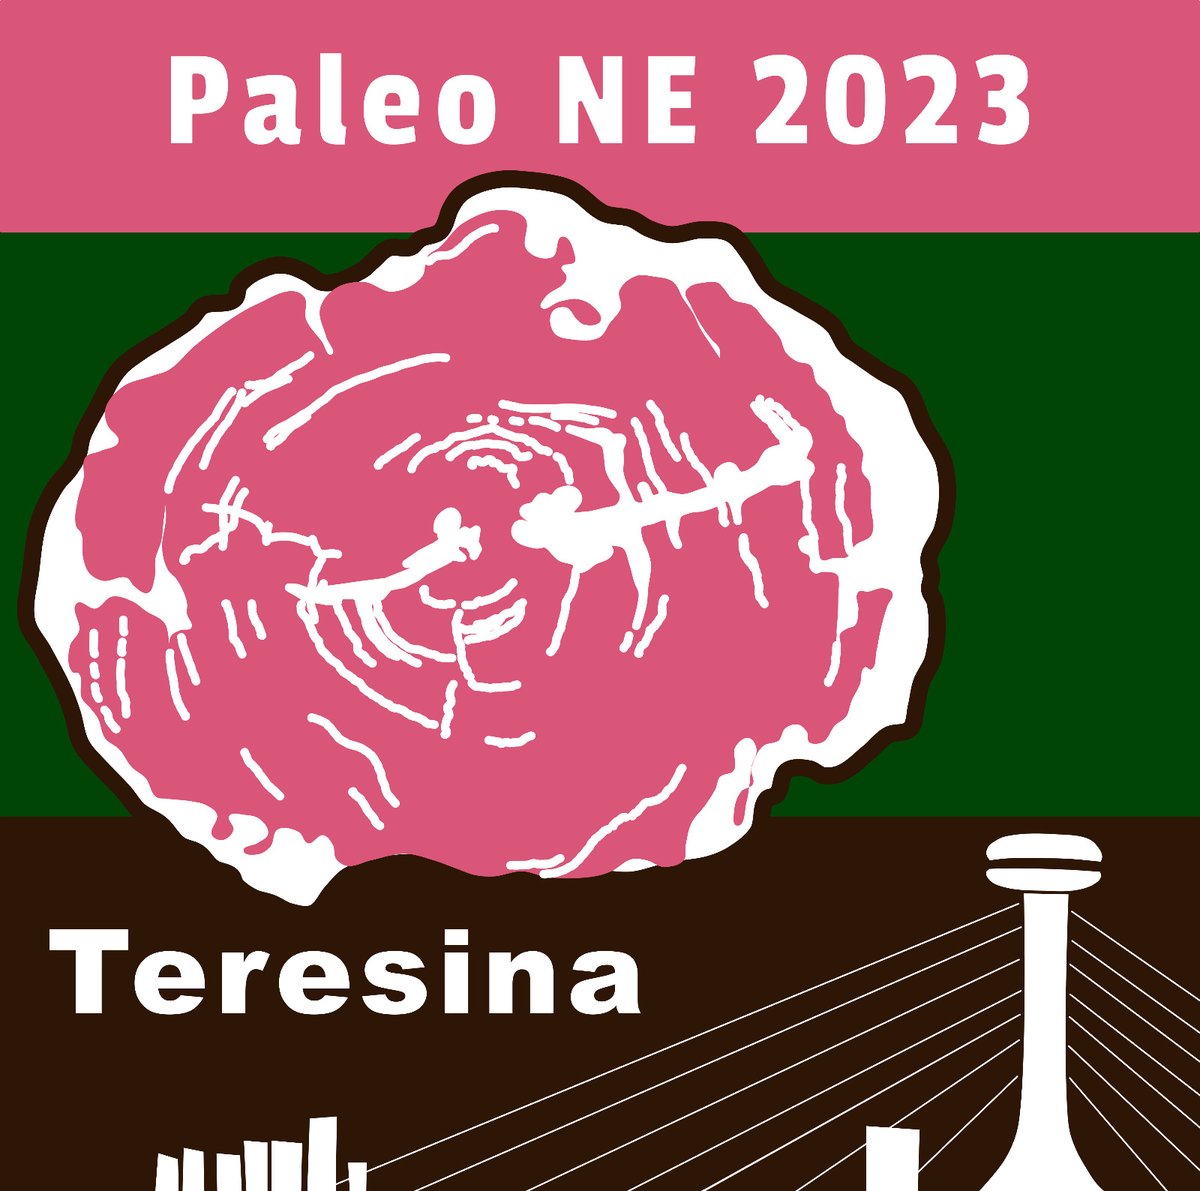 Nos dias 7-9 de dezembro a Paleontologia do Nordeste se reunirá em Teresina, PI. Aguardem a primeira circular em breve! #PaleoNE2023